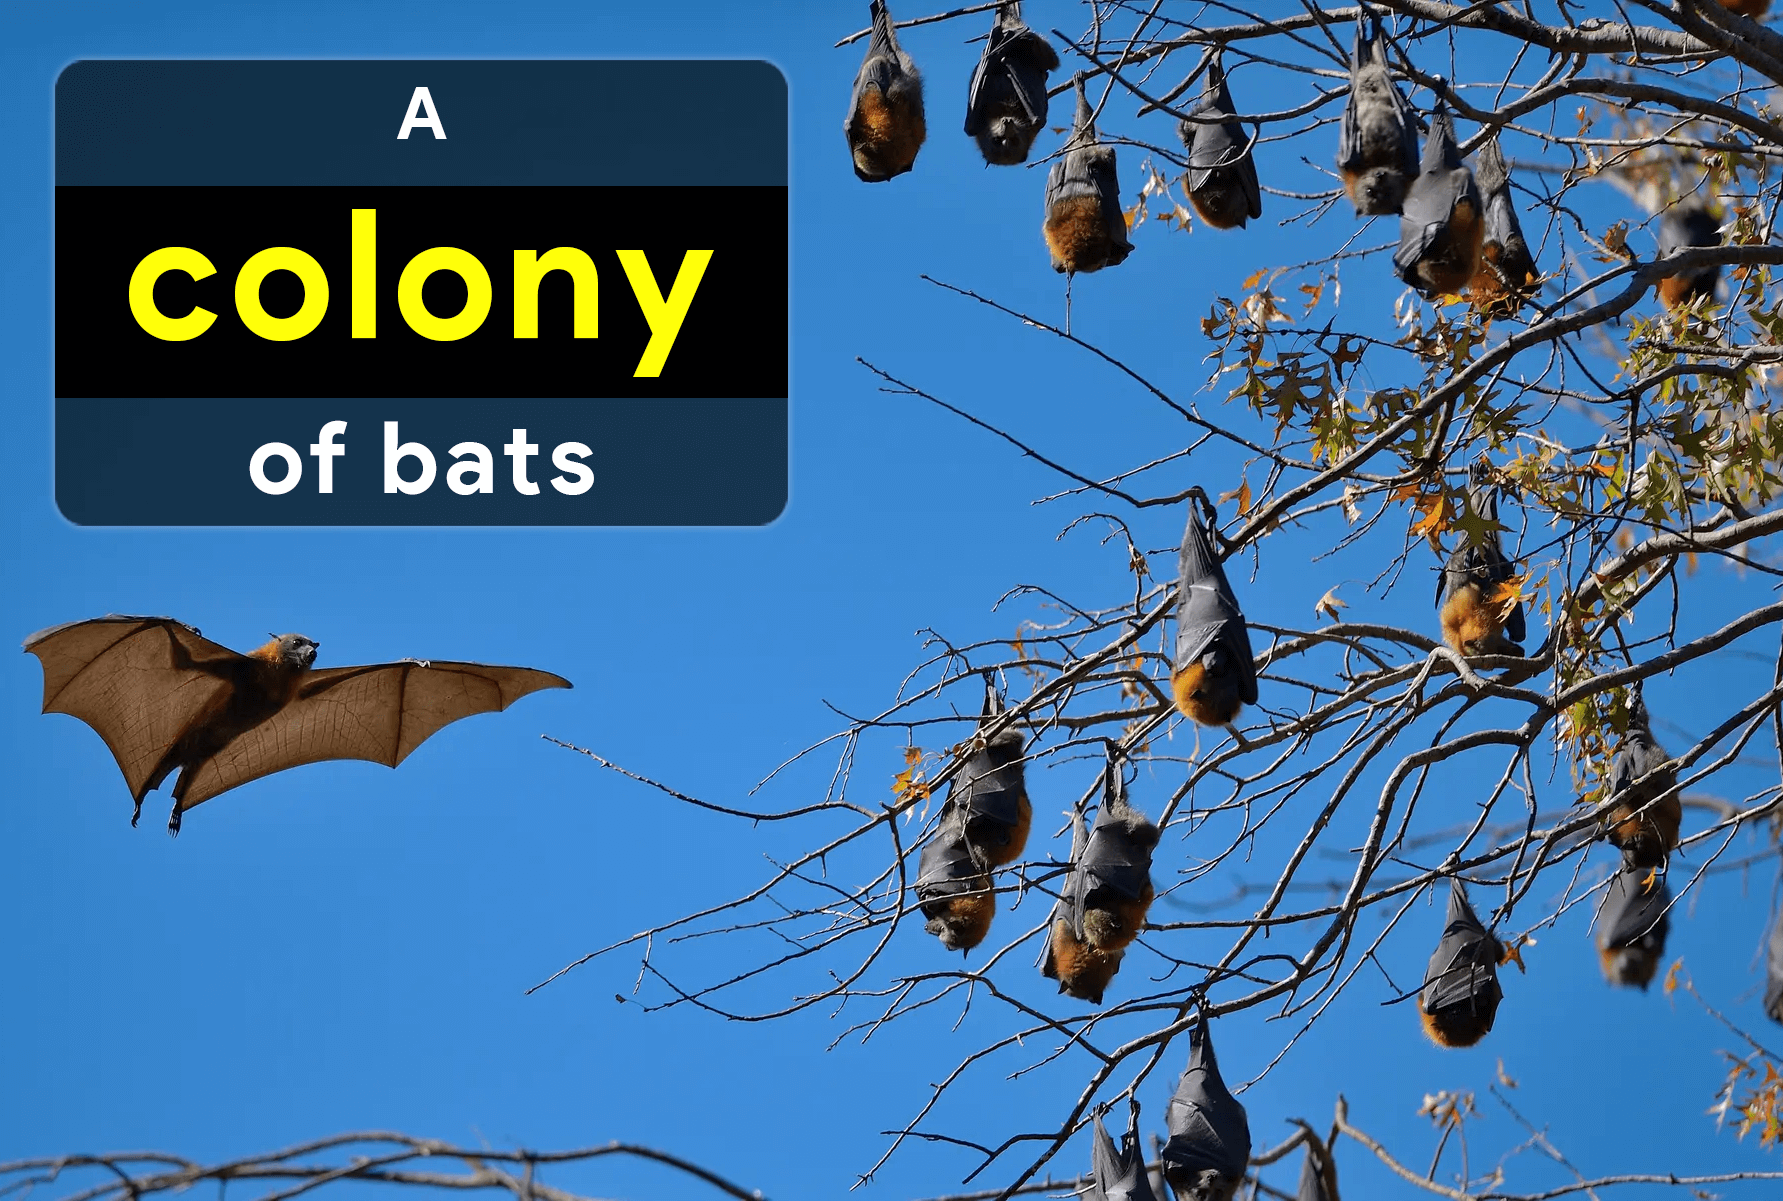 collective-noun-for-bats